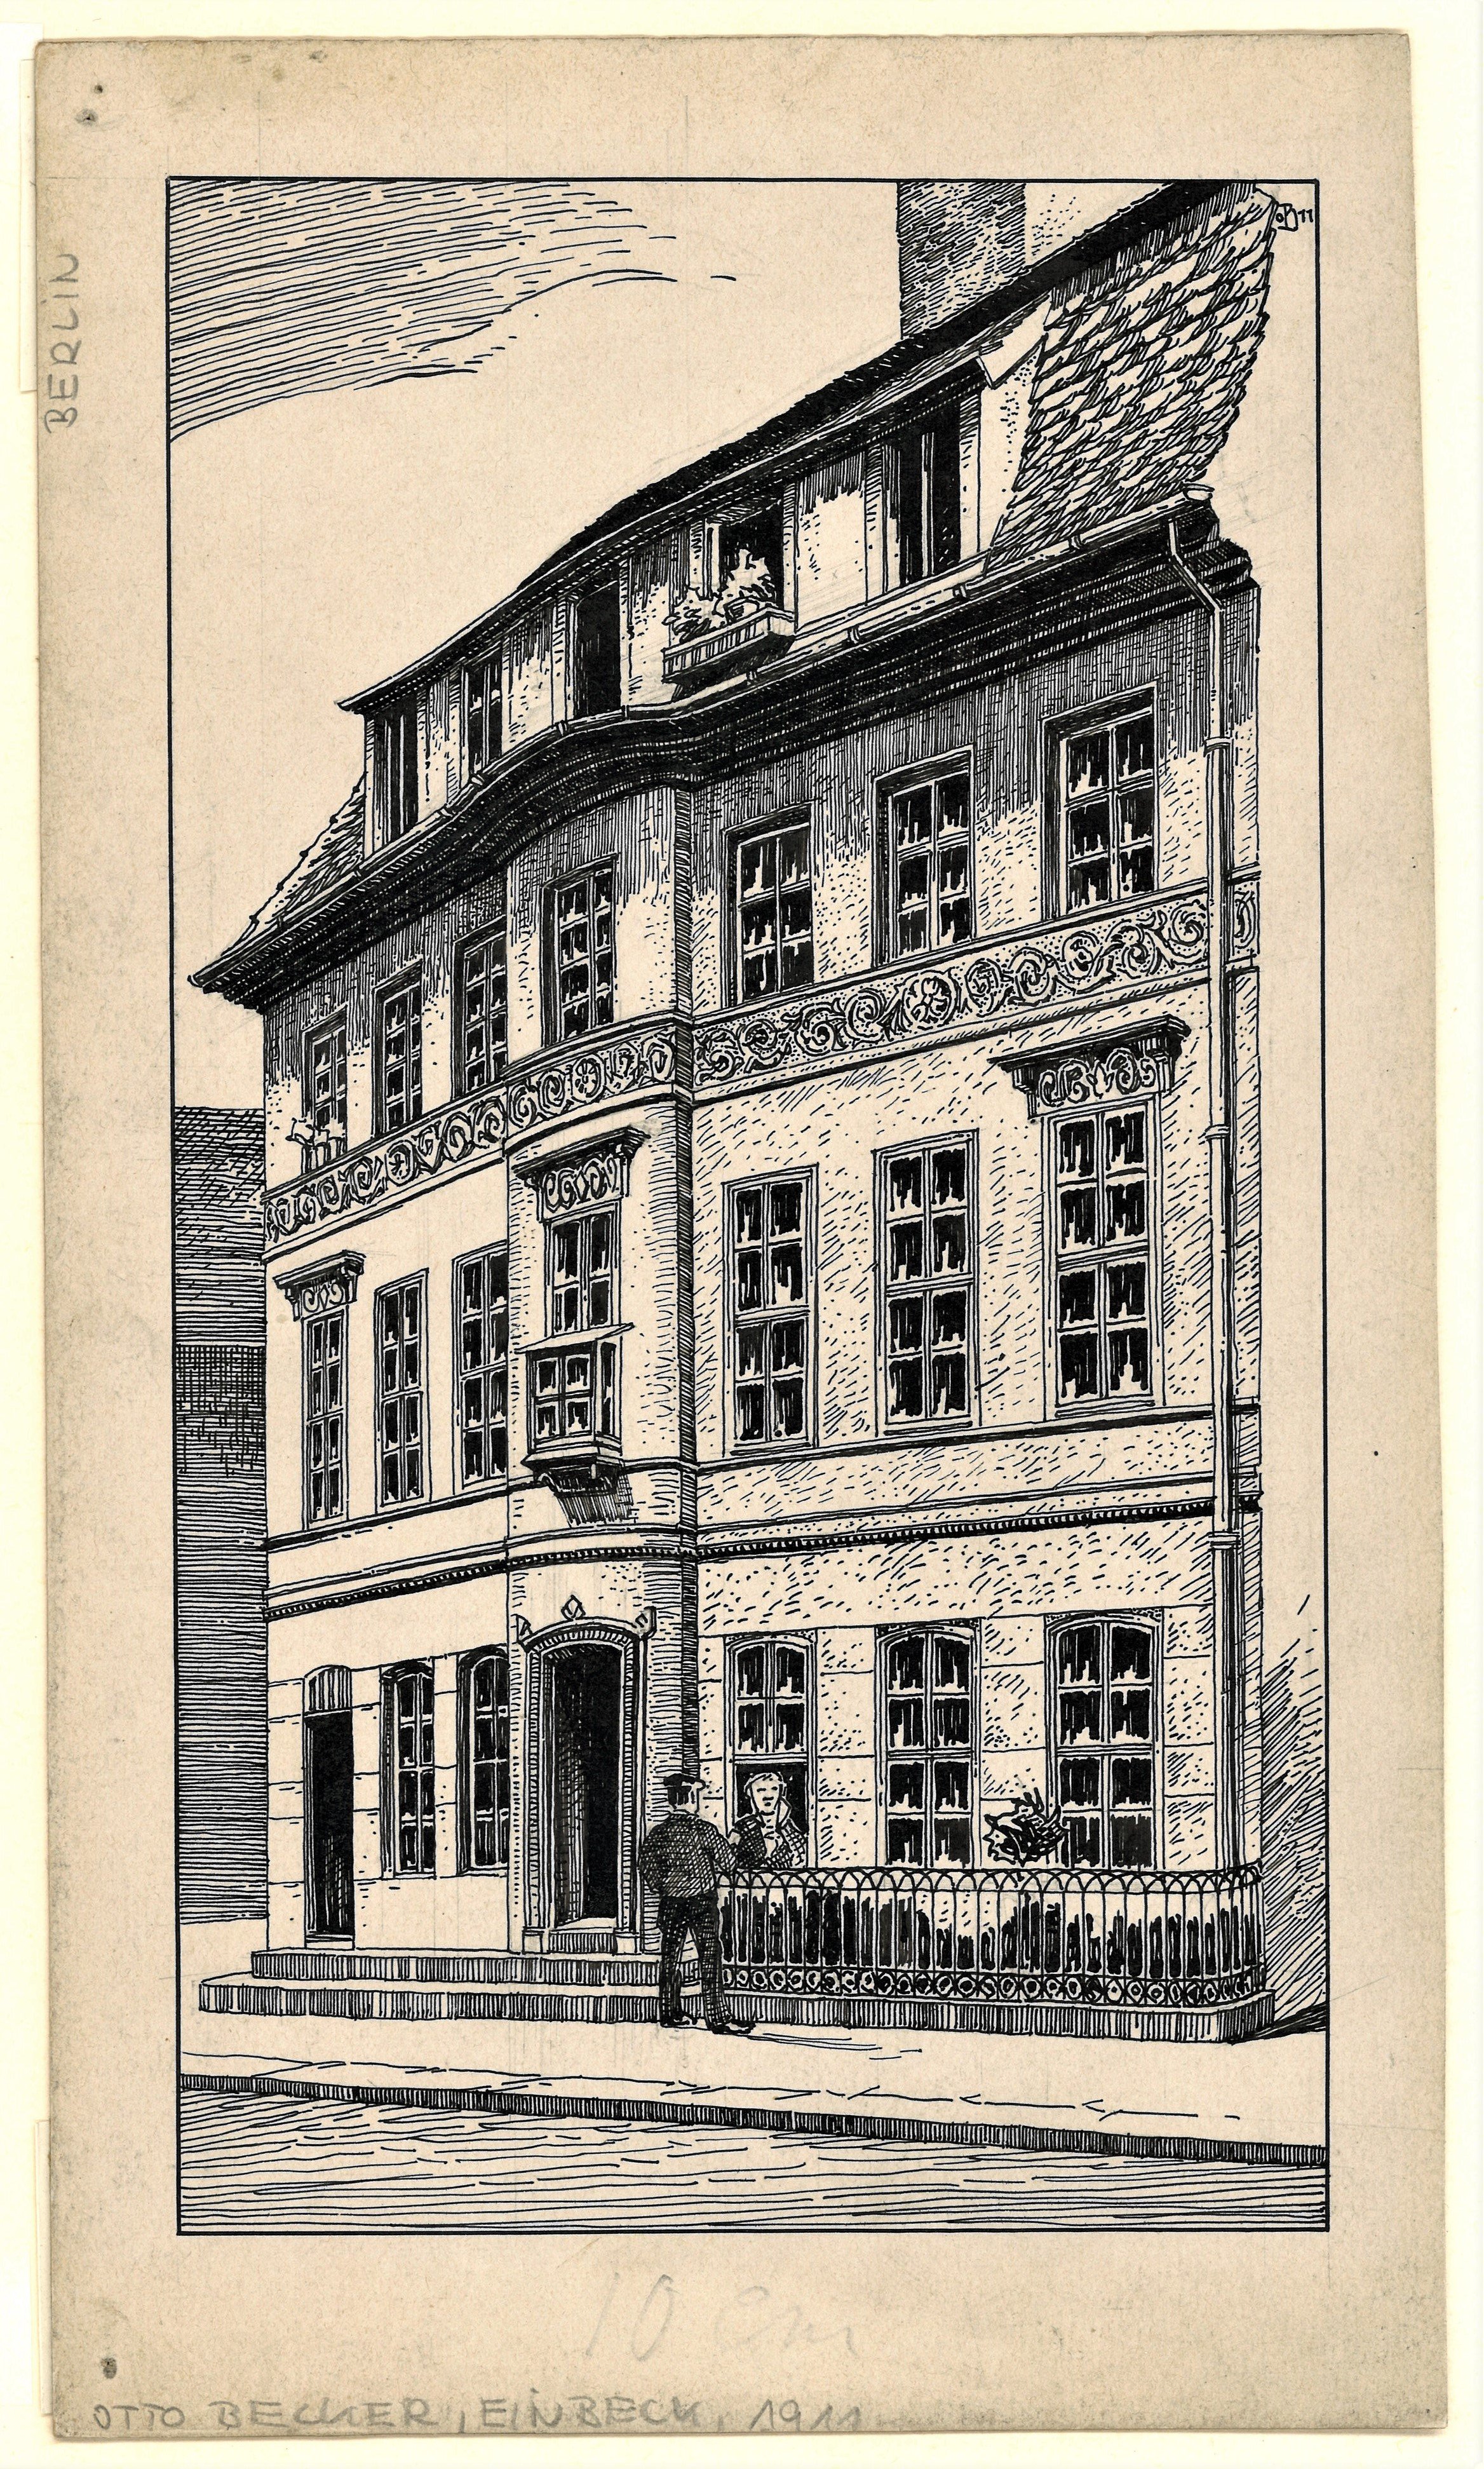 Berlin-Mitte: Poststraße 23 (Knoblauchhaus) (Landesgeschichtliche Vereinigung für die Mark Brandenburg e.V., Archiv CC BY)